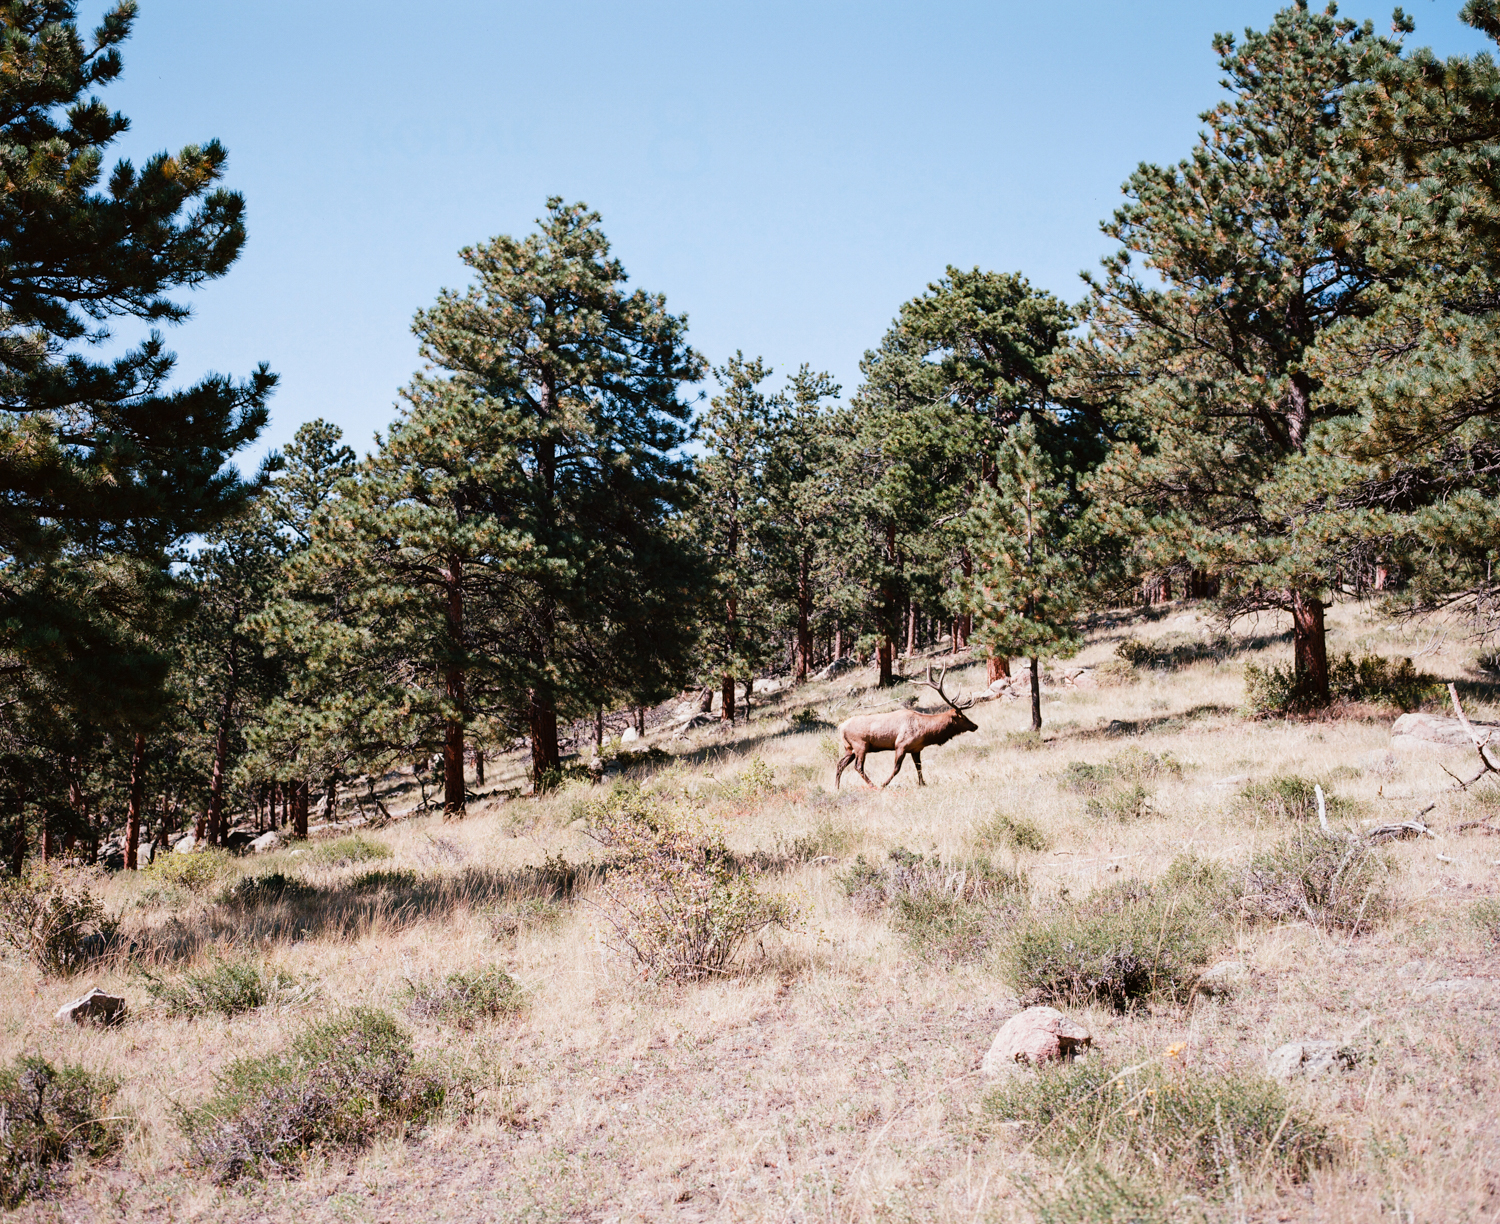  Elk. Rocky Mountain National Park, CO. September 2015. 